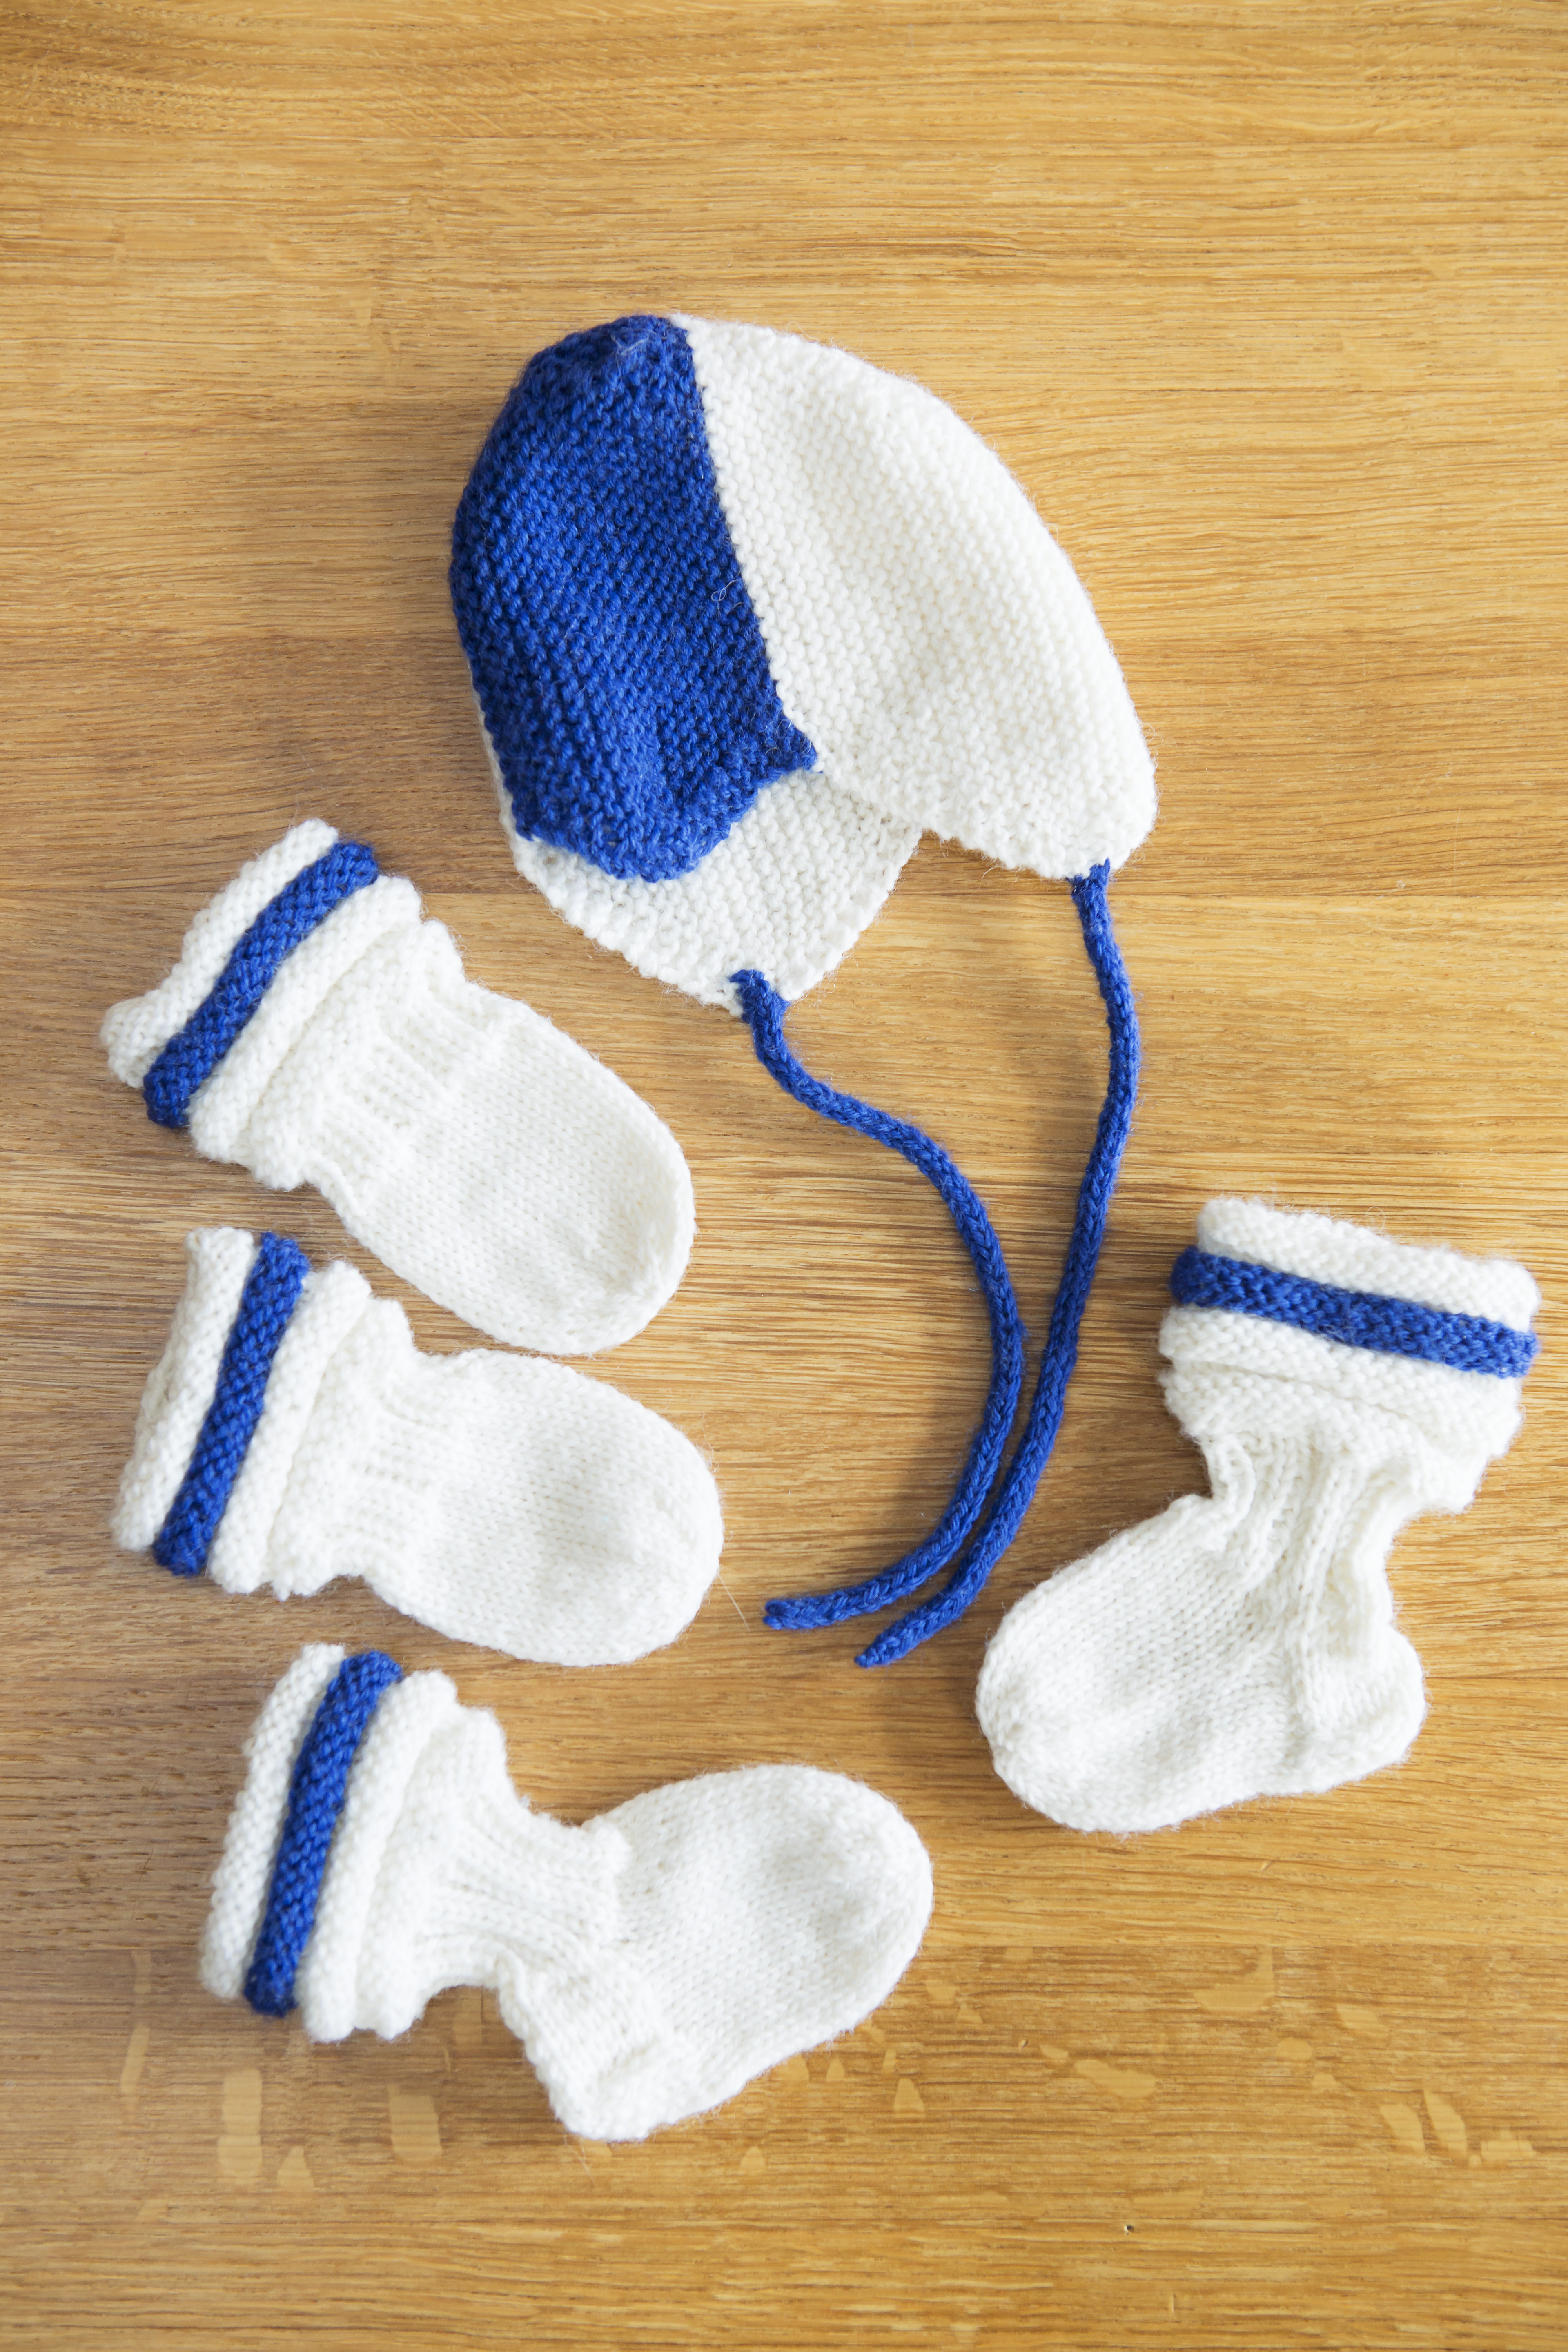 Lanka vauvan sukat nalle vauvan sukat